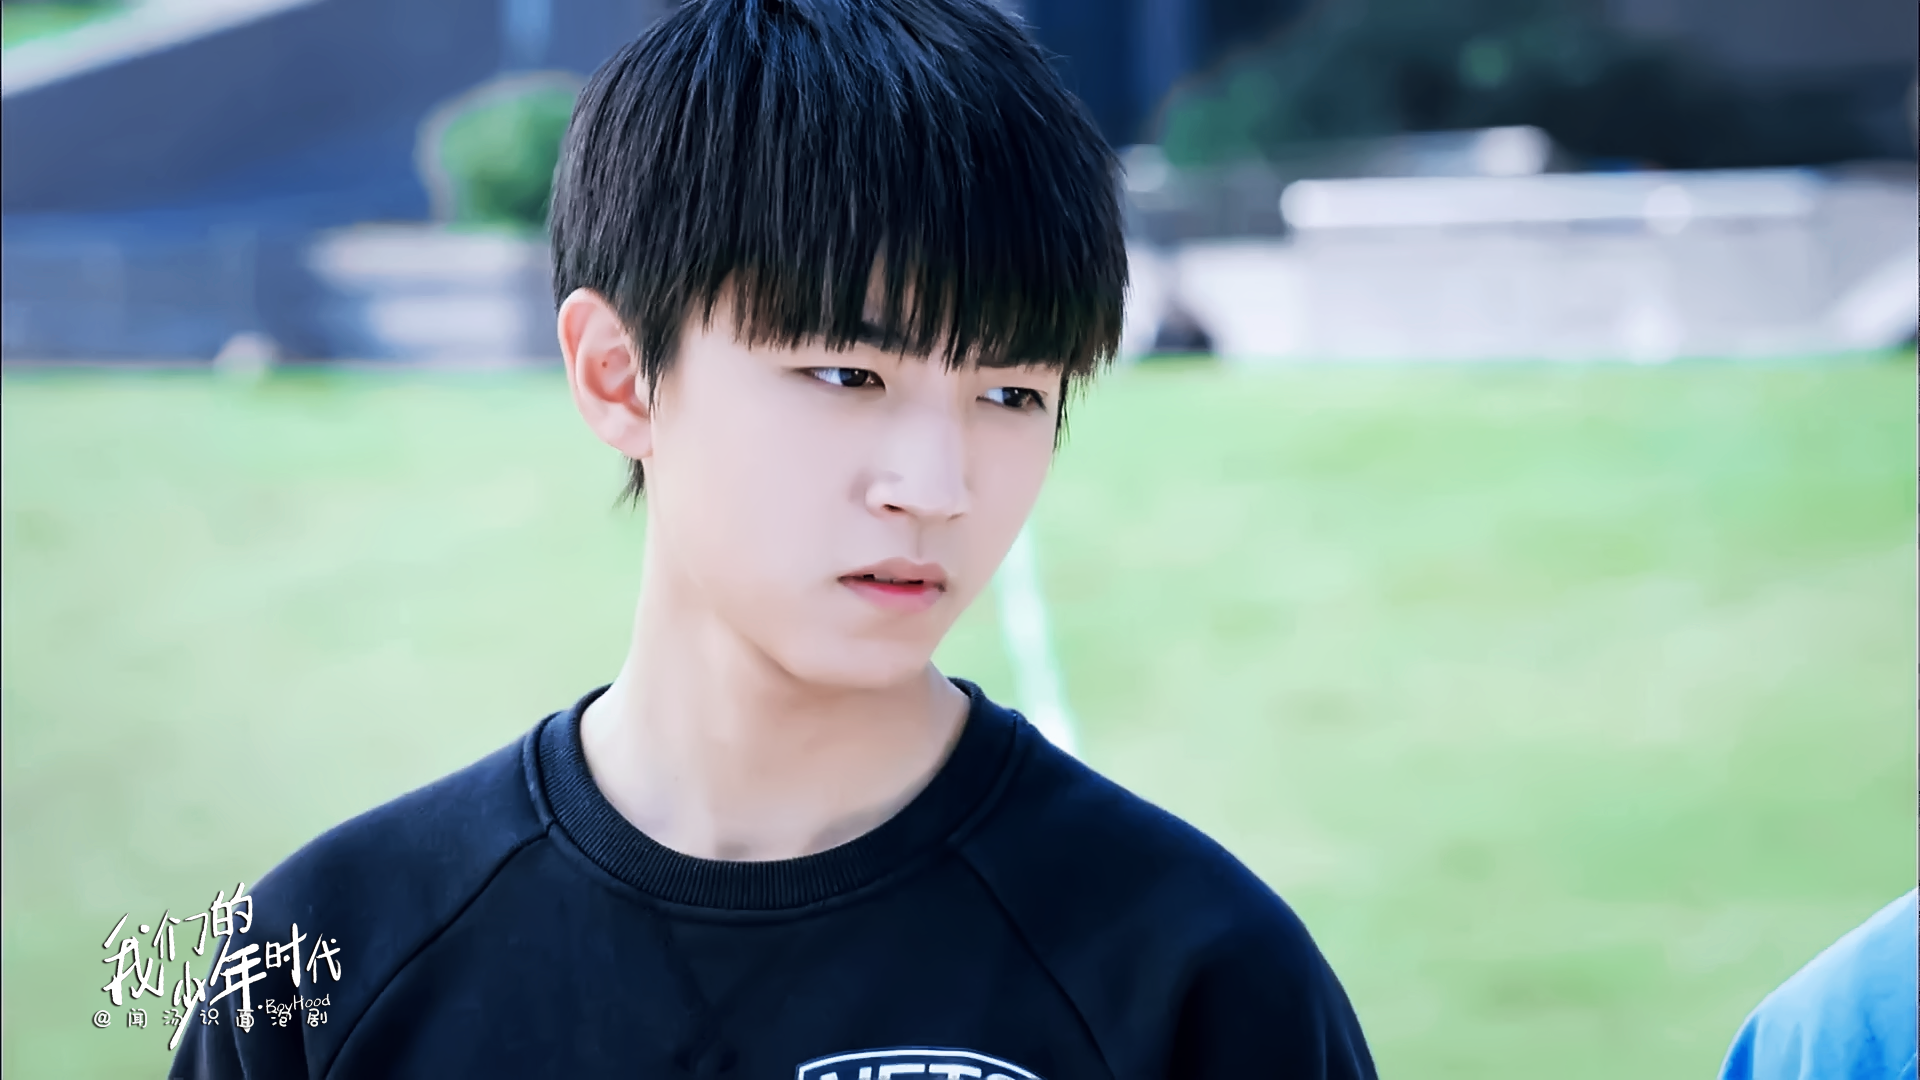 《我们的少年时代》03 王俊凯 饰 棒球少年 邬童